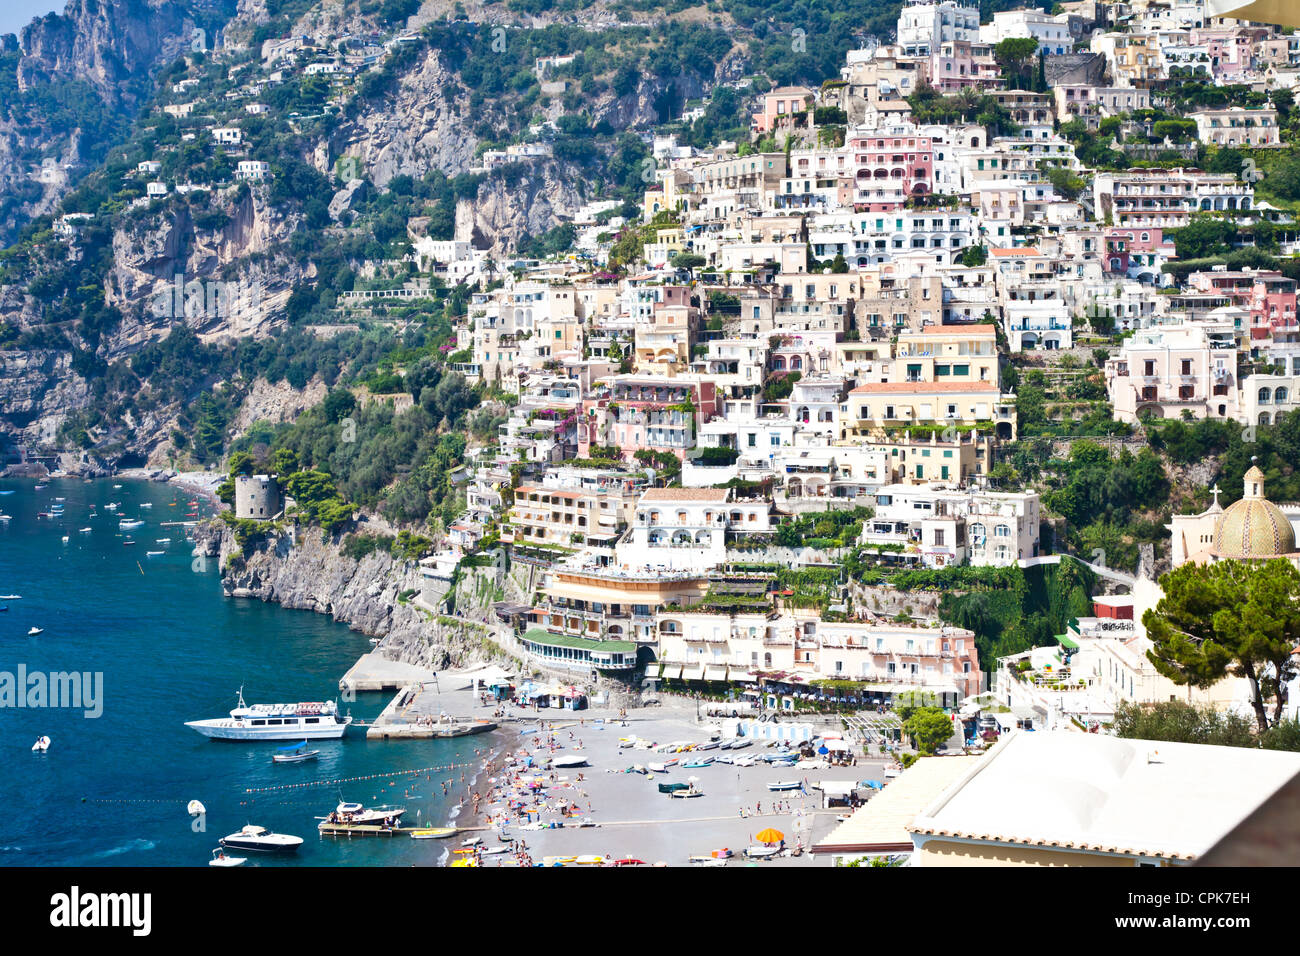 Panoramic view of Minori, wonderful town in Costiera Amalfitana - Italy Stock Photo